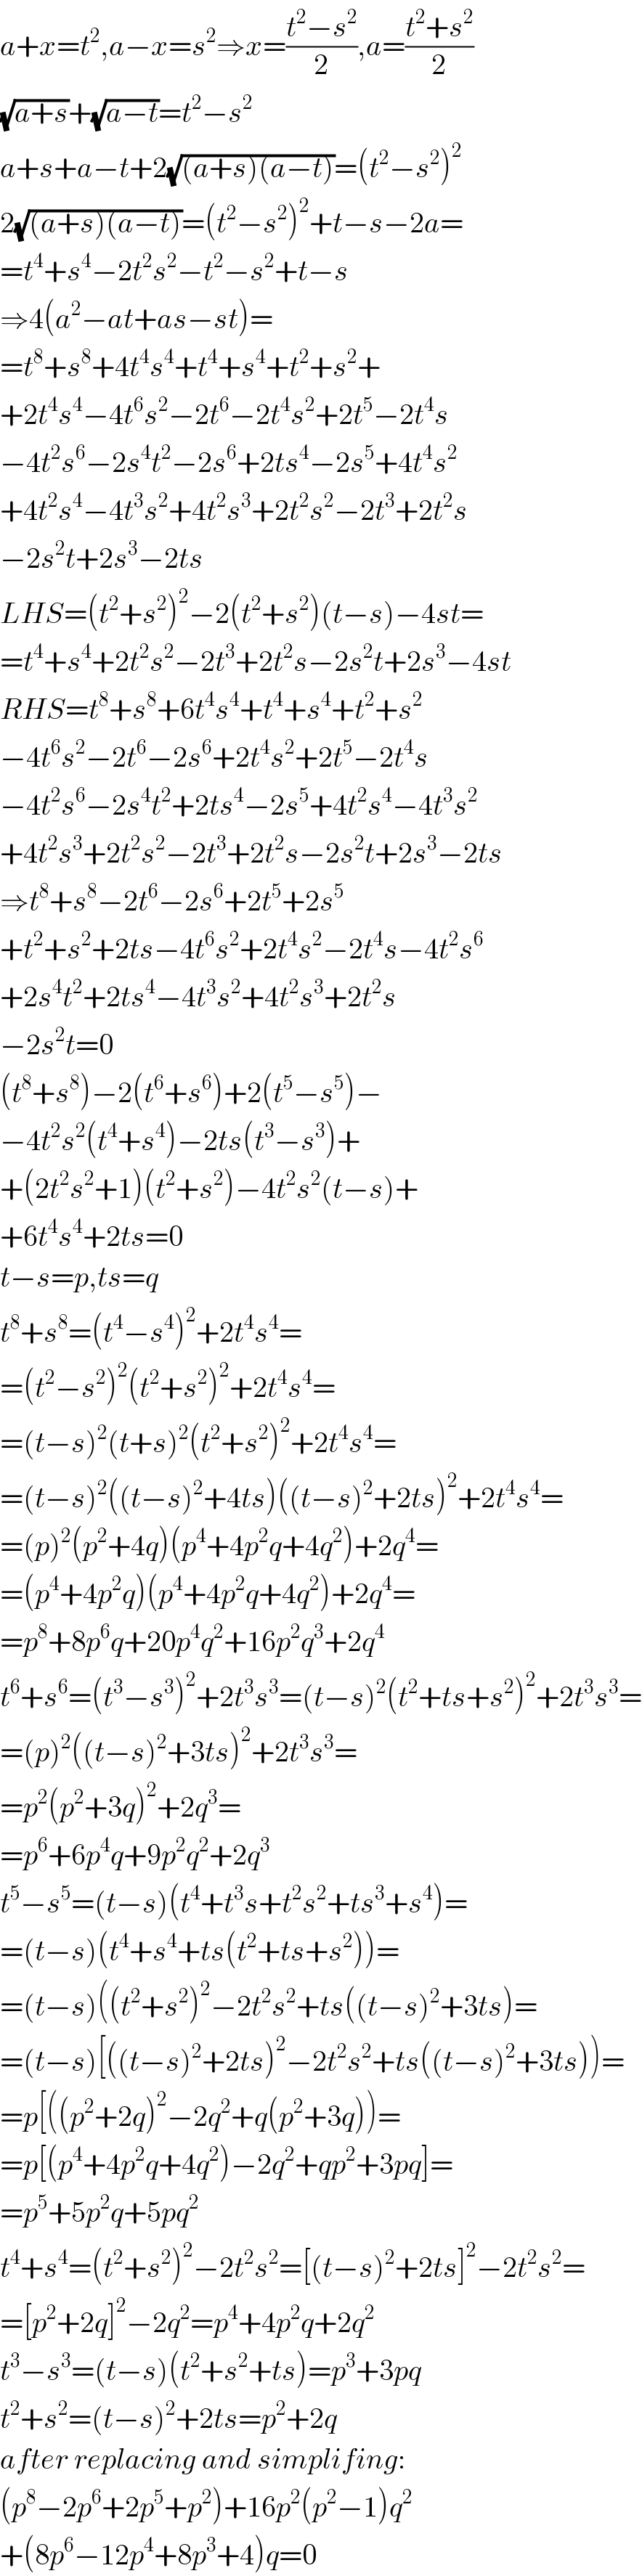 a+x=t^2 ,a−x=s^2 ⇒x=((t^2 −s^2 )/2),a=((t^2 +s^2 )/2)  (√(a+s))+(√(a−t))=t^2 −s^2   a+s+a−t+2(√((a+s)(a−t)))=(t^2 −s^2 )^2   2(√((a+s)(a−t)))=(t^2 −s^2 )^2 +t−s−2a=  =t^4 +s^4 −2t^2 s^2 −t^2 −s^2 +t−s  ⇒4(a^2 −at+as−st)=  =t^8 +s^8 +4t^4 s^4 +t^4 +s^4 +t^2 +s^2 +  +2t^4 s^4 −4t^6 s^2 −2t^6 −2t^4 s^2 +2t^5 −2t^4 s  −4t^2 s^6 −2s^4 t^2 −2s^6 +2ts^4 −2s^5 +4t^4 s^2   +4t^2 s^4 −4t^3 s^2 +4t^2 s^3 +2t^2 s^2 −2t^3 +2t^2 s  −2s^2 t+2s^3 −2ts  LHS=(t^2 +s^2 )^2 −2(t^2 +s^2 )(t−s)−4st=  =t^4 +s^4 +2t^2 s^2 −2t^3 +2t^2 s−2s^2 t+2s^3 −4st  RHS=t^8 +s^8 +6t^4 s^4 +t^4 +s^4 +t^2 +s^2   −4t^6 s^2 −2t^6 −2s^6 +2t^4 s^2 +2t^5 −2t^4 s  −4t^2 s^6 −2s^4 t^2 +2ts^4 −2s^5 +4t^2 s^4 −4t^3 s^2   +4t^2 s^3 +2t^2 s^2 −2t^3 +2t^2 s−2s^2 t+2s^3 −2ts  ⇒t^8 +s^8 −2t^6 −2s^6 +2t^5 +2s^5   +t^2 +s^2 +2ts−4t^6 s^2 +2t^4 s^2 −2t^4 s−4t^2 s^6   +2s^4 t^2 +2ts^4 −4t^3 s^2 +4t^2 s^3 +2t^2 s  −2s^2 t=0  (t^8 +s^8 )−2(t^6 +s^6 )+2(t^5 −s^5 )−  −4t^2 s^2 (t^4 +s^4 )−2ts(t^3 −s^3 )+  +(2t^2 s^2 +1)(t^2 +s^2 )−4t^2 s^2 (t−s)+  +6t^4 s^4 +2ts=0  t−s=p,ts=q  t^8 +s^8 =(t^4 −s^4 )^2 +2t^4 s^4 =  =(t^2 −s^2 )^2 (t^2 +s^2 )^2 +2t^4 s^4 =  =(t−s)^2 (t+s)^2 (t^2 +s^2 )^2 +2t^4 s^4 =  =(t−s)^2 ((t−s)^2 +4ts)((t−s)^2 +2ts)^2 +2t^4 s^4 =  =(p)^2 (p^2 +4q)(p^4 +4p^2 q+4q^2 )+2q^4 =  =(p^4 +4p^2 q)(p^4 +4p^2 q+4q^2 )+2q^4 =  =p^8 +8p^6 q+20p^4 q^2 +16p^2 q^3 +2q^4   t^6 +s^6 =(t^3 −s^3 )^2 +2t^3 s^3 =(t−s)^2 (t^2 +ts+s^2 )^2 +2t^3 s^3 =  =(p)^2 ((t−s)^2 +3ts)^2 +2t^3 s^3 =  =p^2 (p^2 +3q)^2 +2q^3 =  =p^6 +6p^4 q+9p^2 q^2 +2q^3   t^5 −s^5 =(t−s)(t^4 +t^3 s+t^2 s^2 +ts^3 +s^4 )=  =(t−s)(t^4 +s^4 +ts(t^2 +ts+s^2 ))=  =(t−s)((t^2 +s^2 )^2 −2t^2 s^2 +ts((t−s)^2 +3ts)=  =(t−s)[((t−s)^2 +2ts)^2 −2t^2 s^2 +ts((t−s)^2 +3ts))=  =p[((p^2 +2q)^2 −2q^2 +q(p^2 +3q))=  =p[(p^4 +4p^2 q+4q^2 )−2q^2 +qp^2 +3pq]=  =p^5 +5p^2 q+5pq^2   t^4 +s^4 =(t^2 +s^2 )^2 −2t^2 s^2 =[(t−s)^2 +2ts]^2 −2t^2 s^2 =  =[p^2 +2q]^2 −2q^2 =p^4 +4p^2 q+2q^2   t^3 −s^3 =(t−s)(t^2 +s^2 +ts)=p^3 +3pq  t^2 +s^2 =(t−s)^2 +2ts=p^2 +2q  after replacing and simplifing:  (p^8 −2p^6 +2p^5 +p^2 )+16p^2 (p^2 −1)q^2   +(8p^6 −12p^4 +8p^3 +4)q=0  